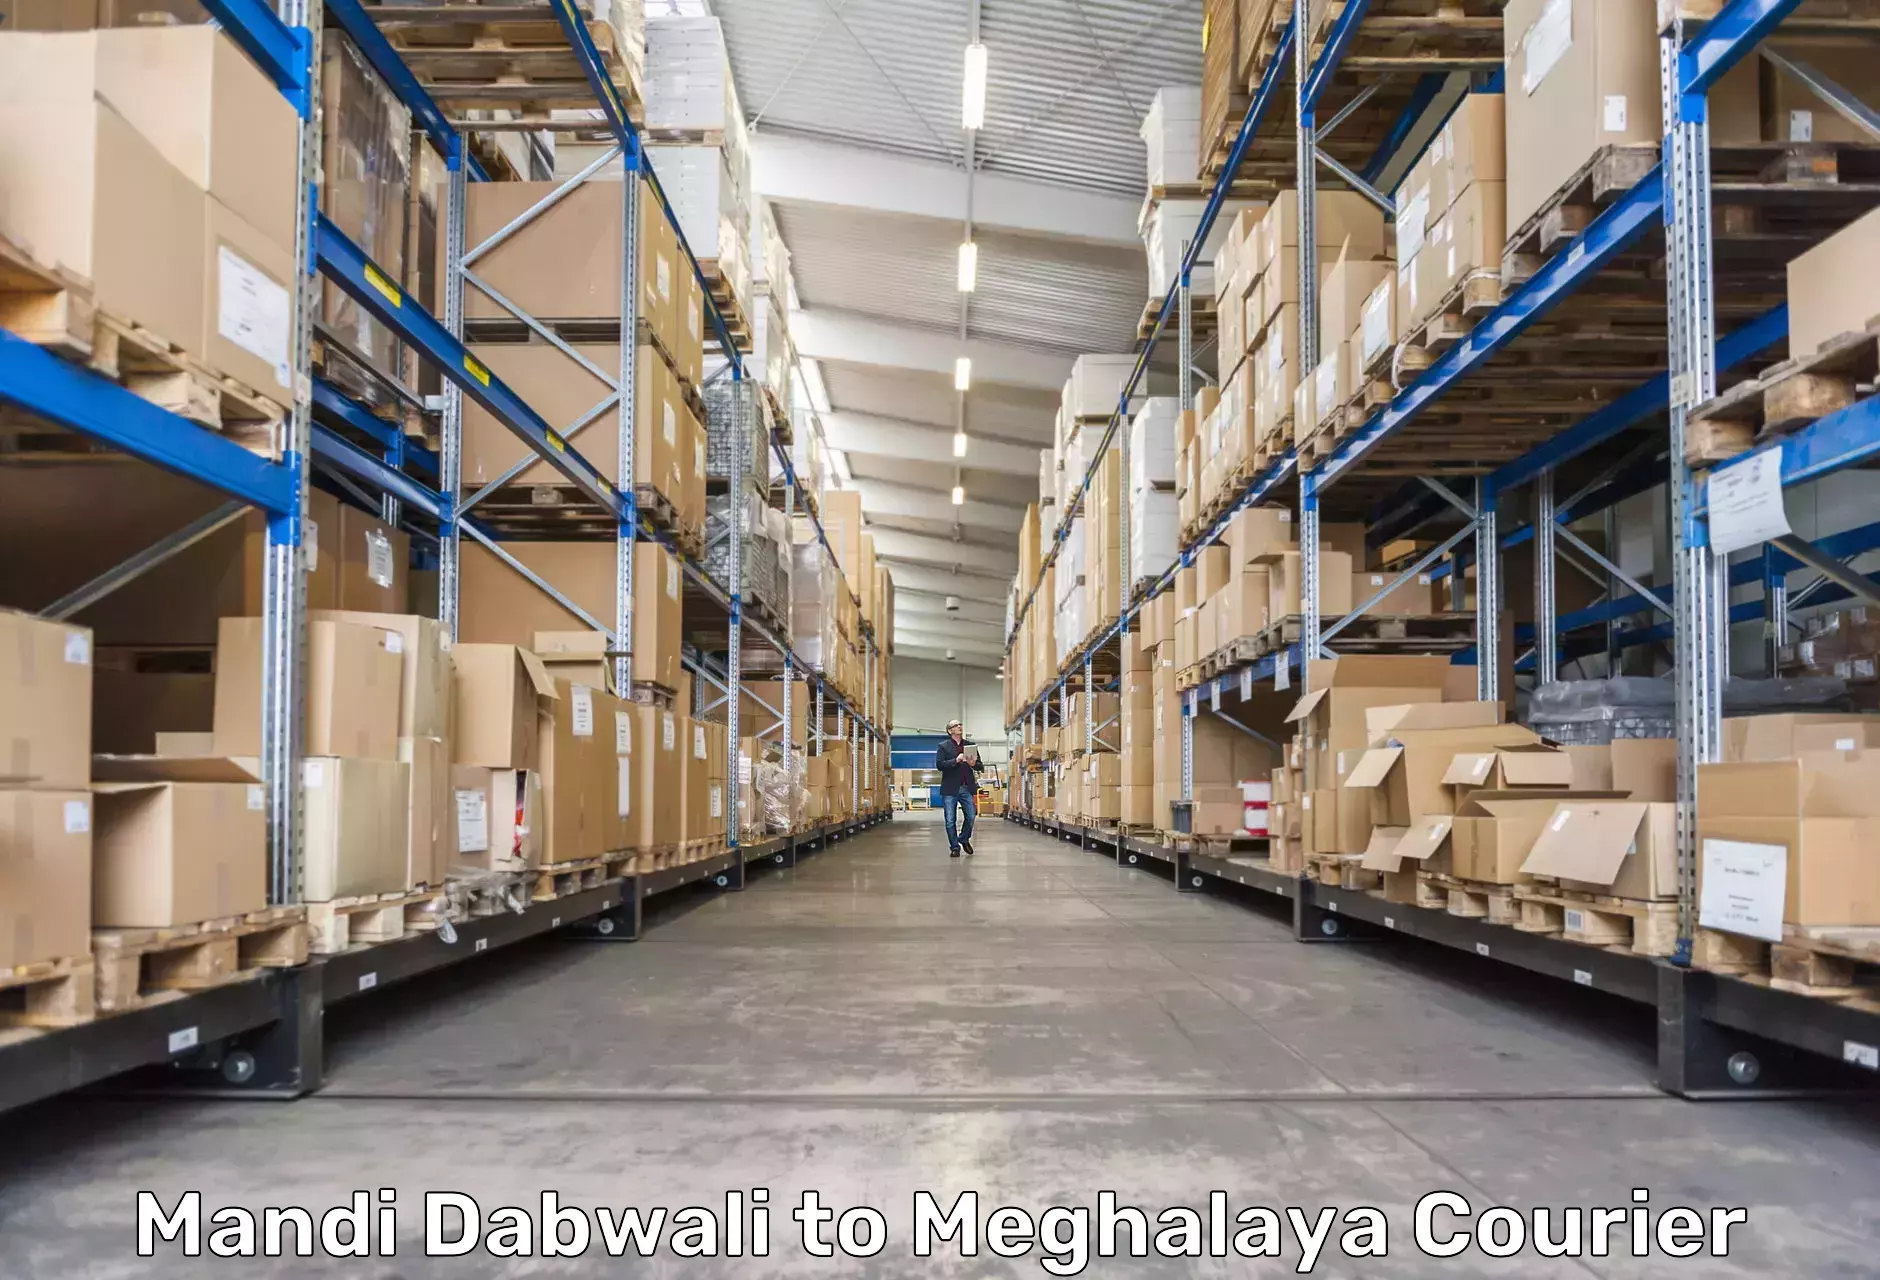 Courier service innovation Mandi Dabwali to Meghalaya